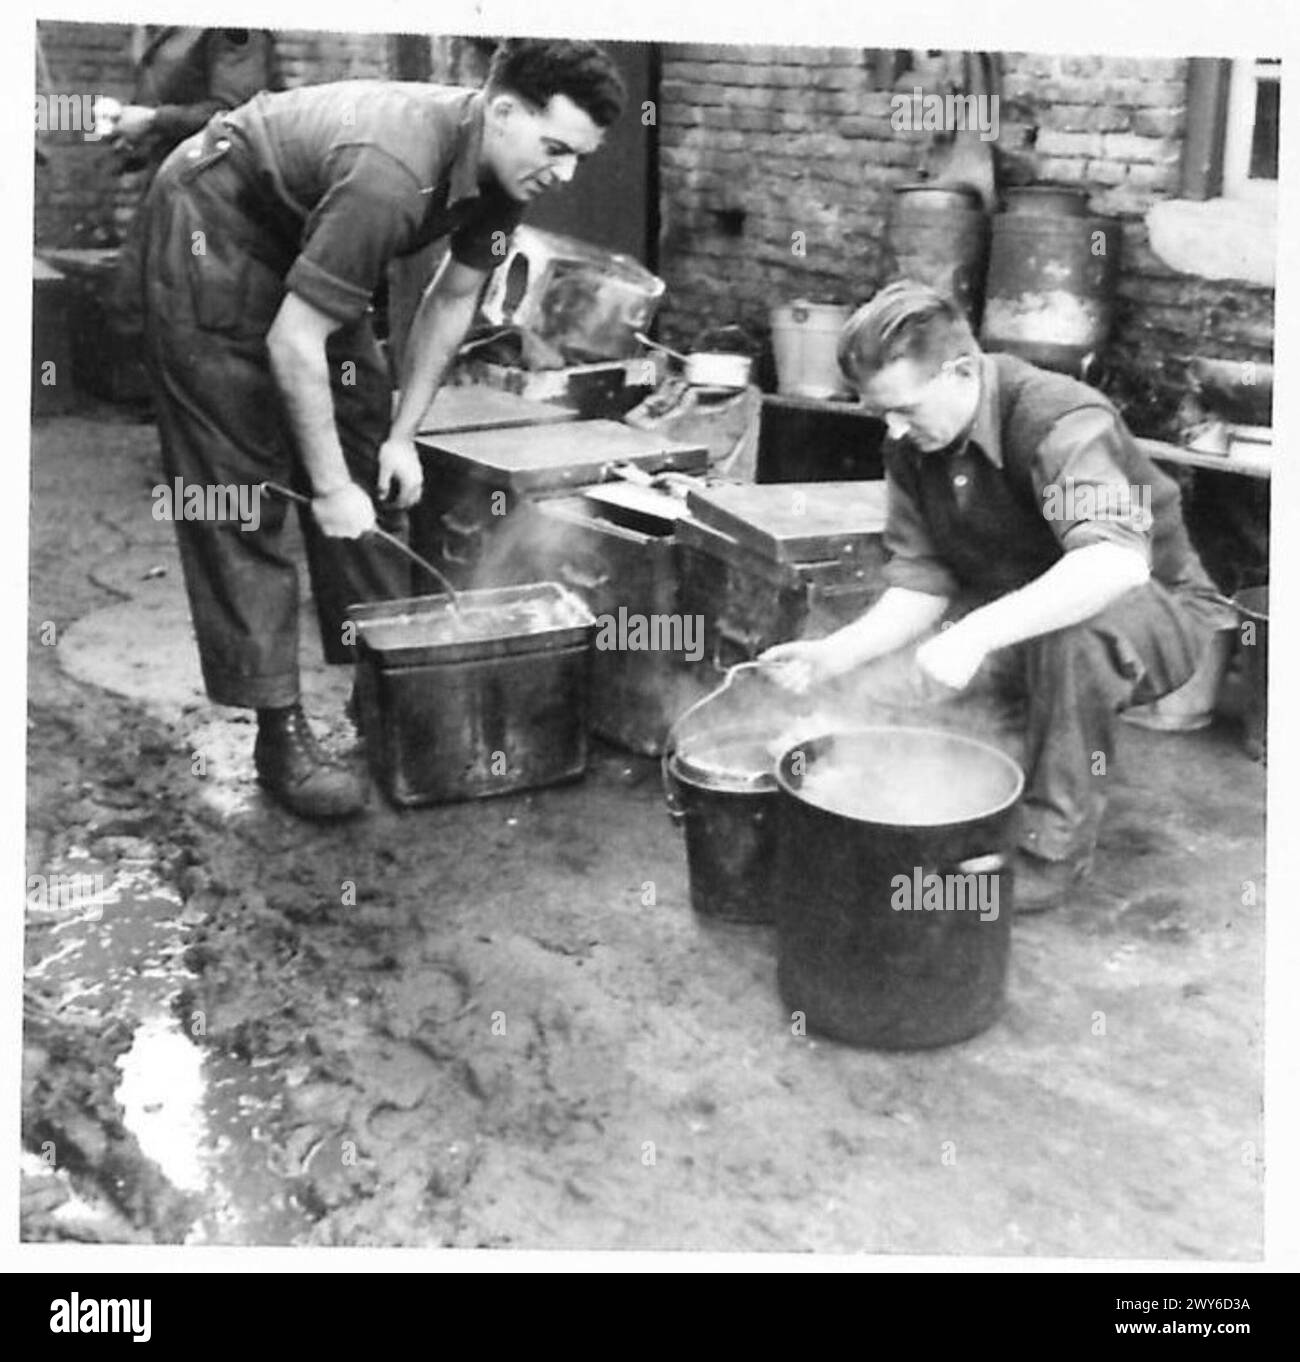 CATERING-VERSORGUNG UND SERVICE - Ptes Rolfe und Thomson füllen die Behälter, in denen die warmen Speisen transportiert werden. Britische Armee, 21. Armeegruppe Stockfoto